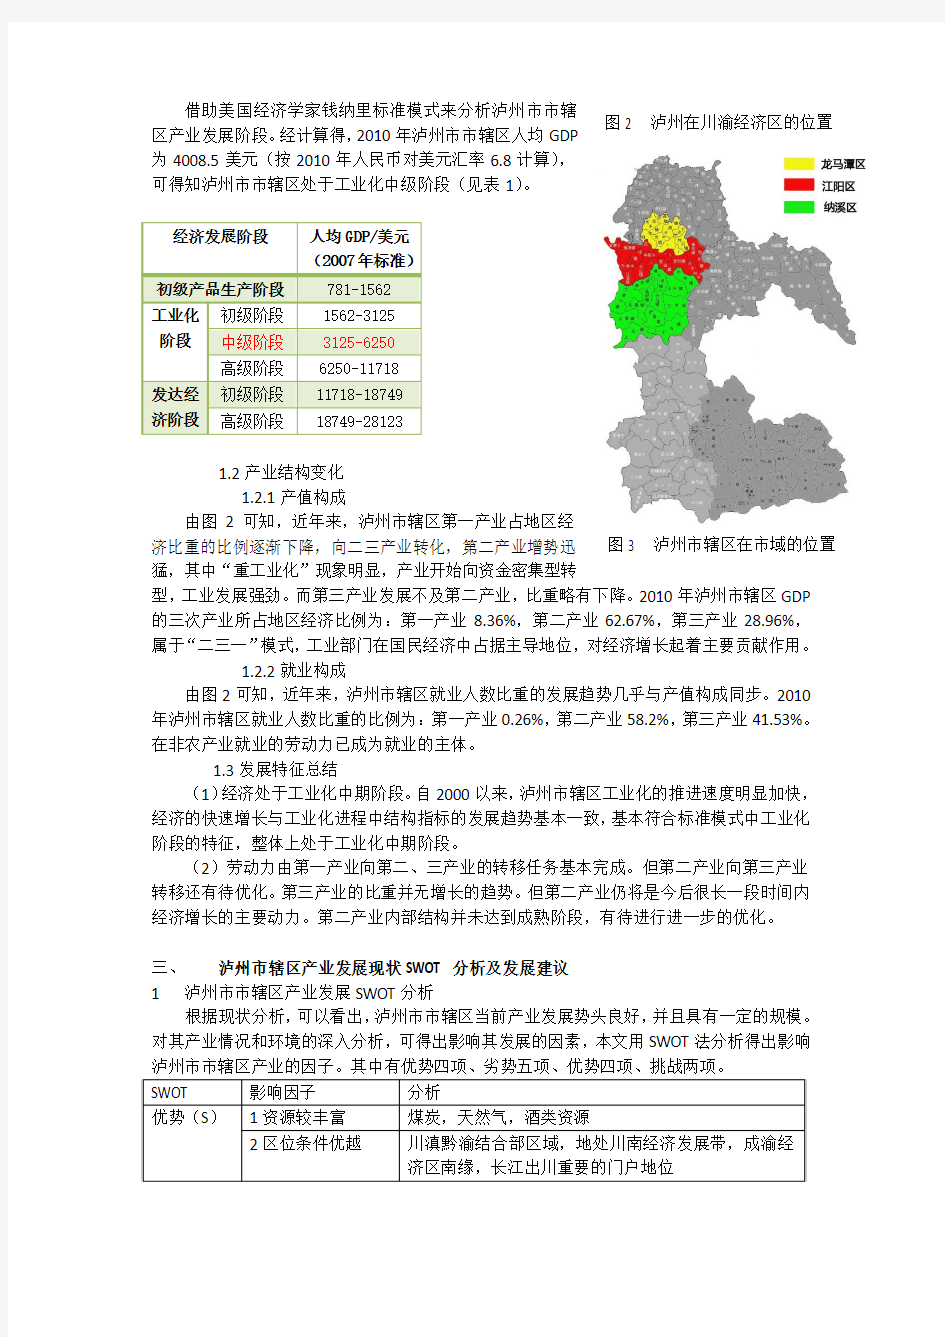 四川省泸州市经济产业现状分析及发展建议 (1)